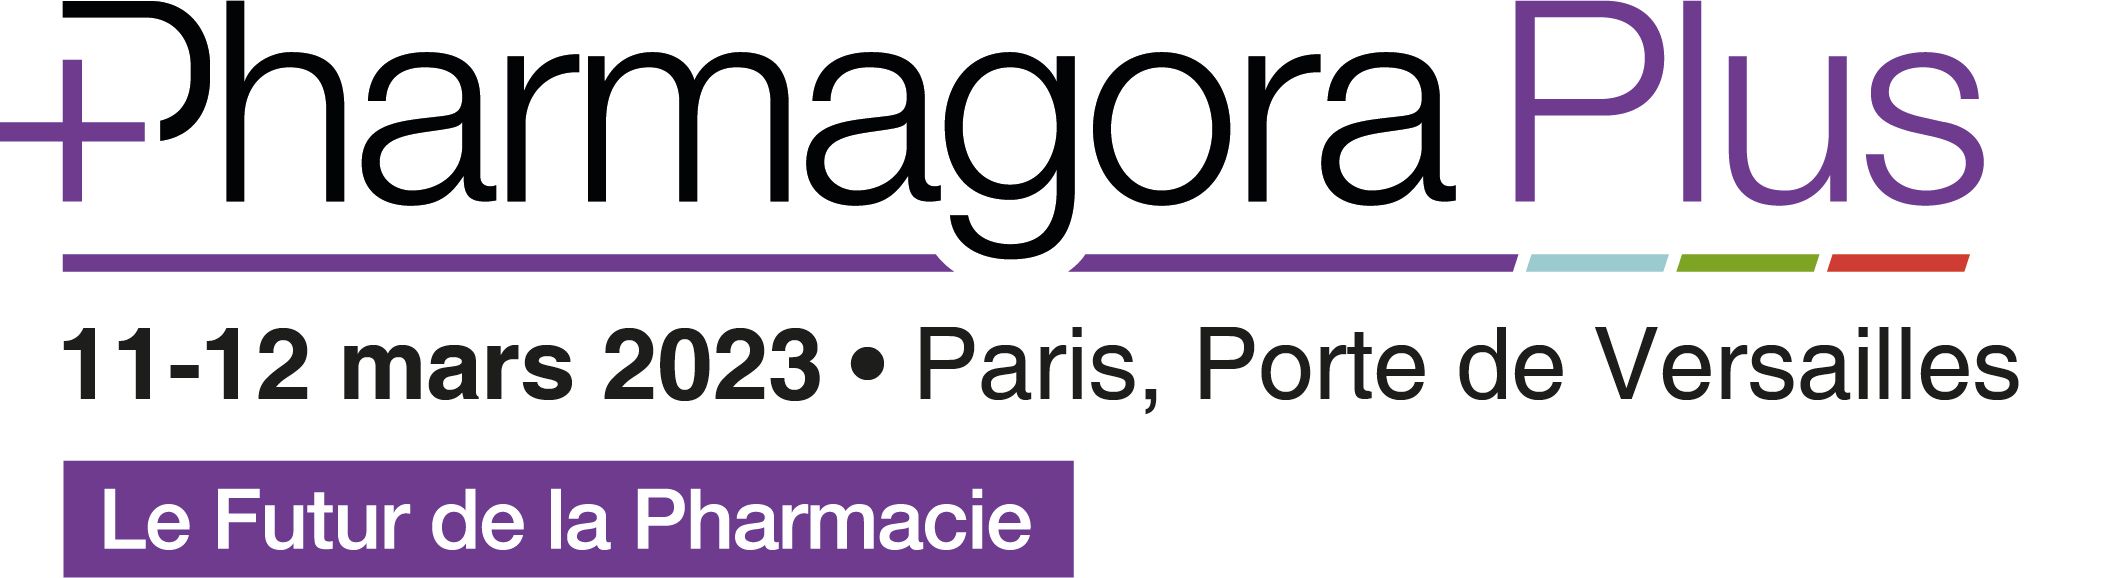 PharmagoraPlus 2022